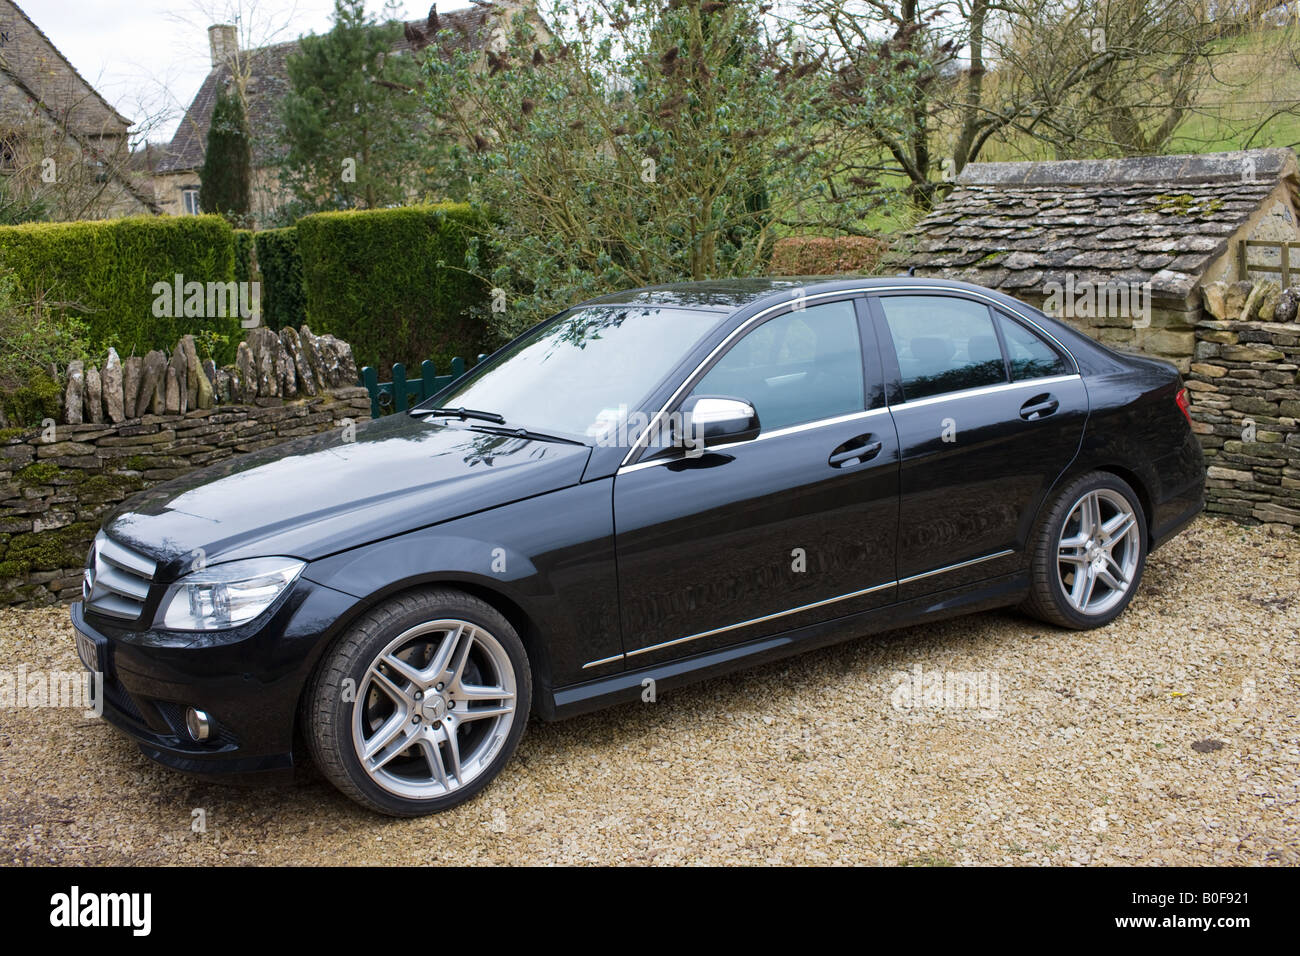 Mercedes C350 noir berline sport Cotswolds Oxfordshire Royaume-Uni Banque D'Images